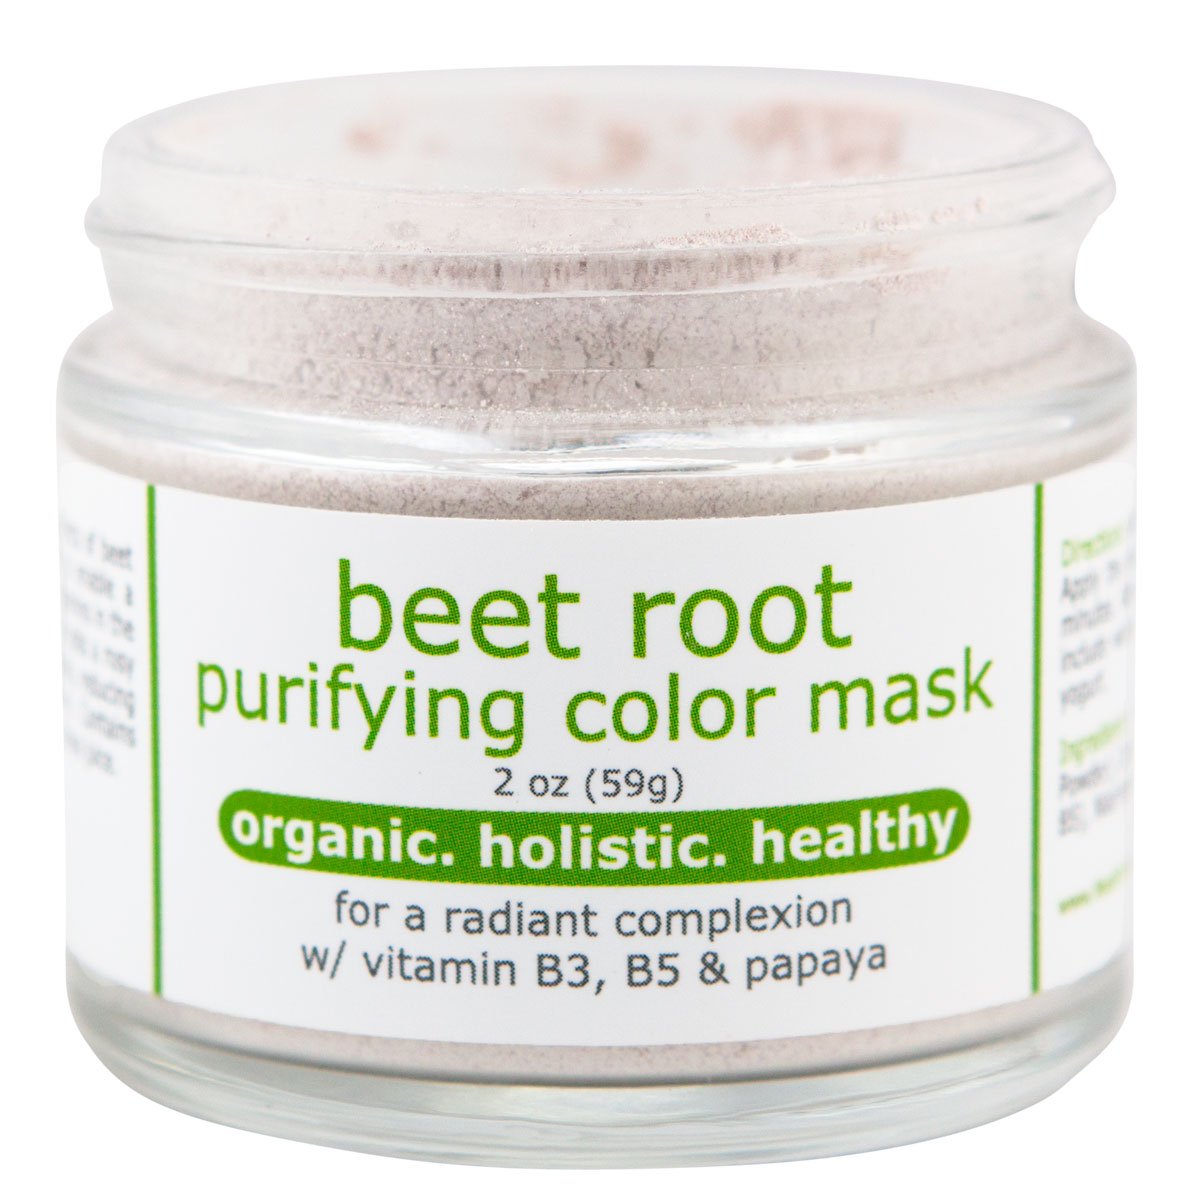 beet root cap off -